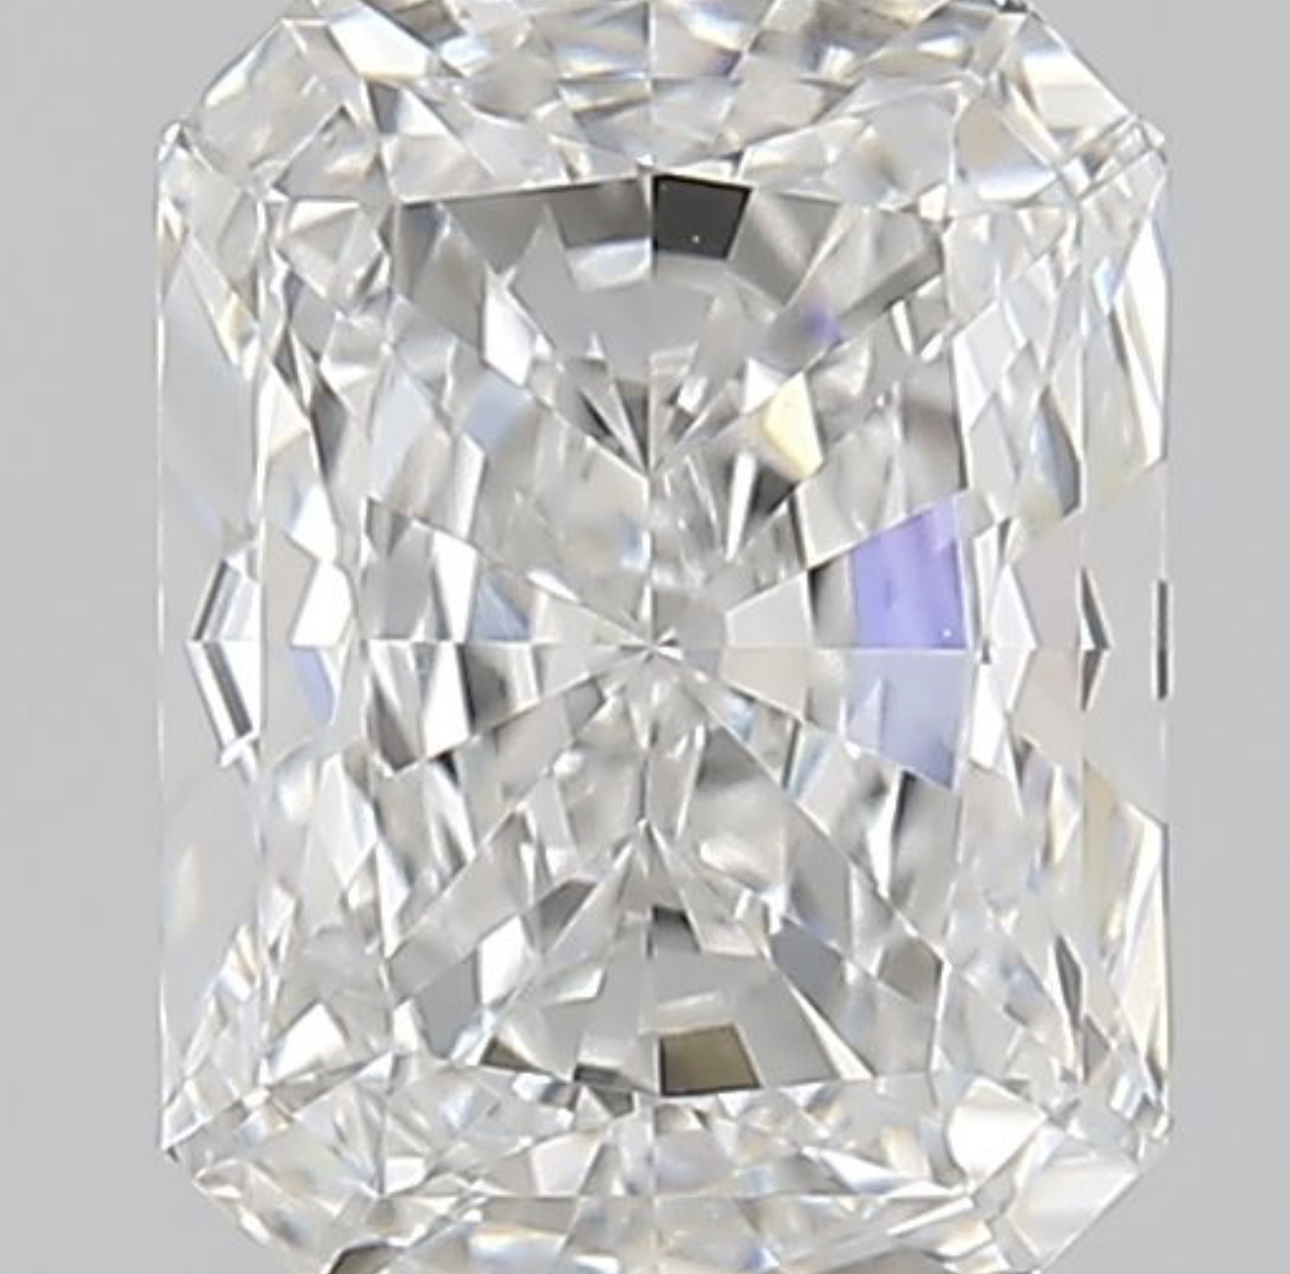 Single - IGI Radiant Cut Diamond E Colour VVS1 Clarity 1.51 Carat - LG546216864